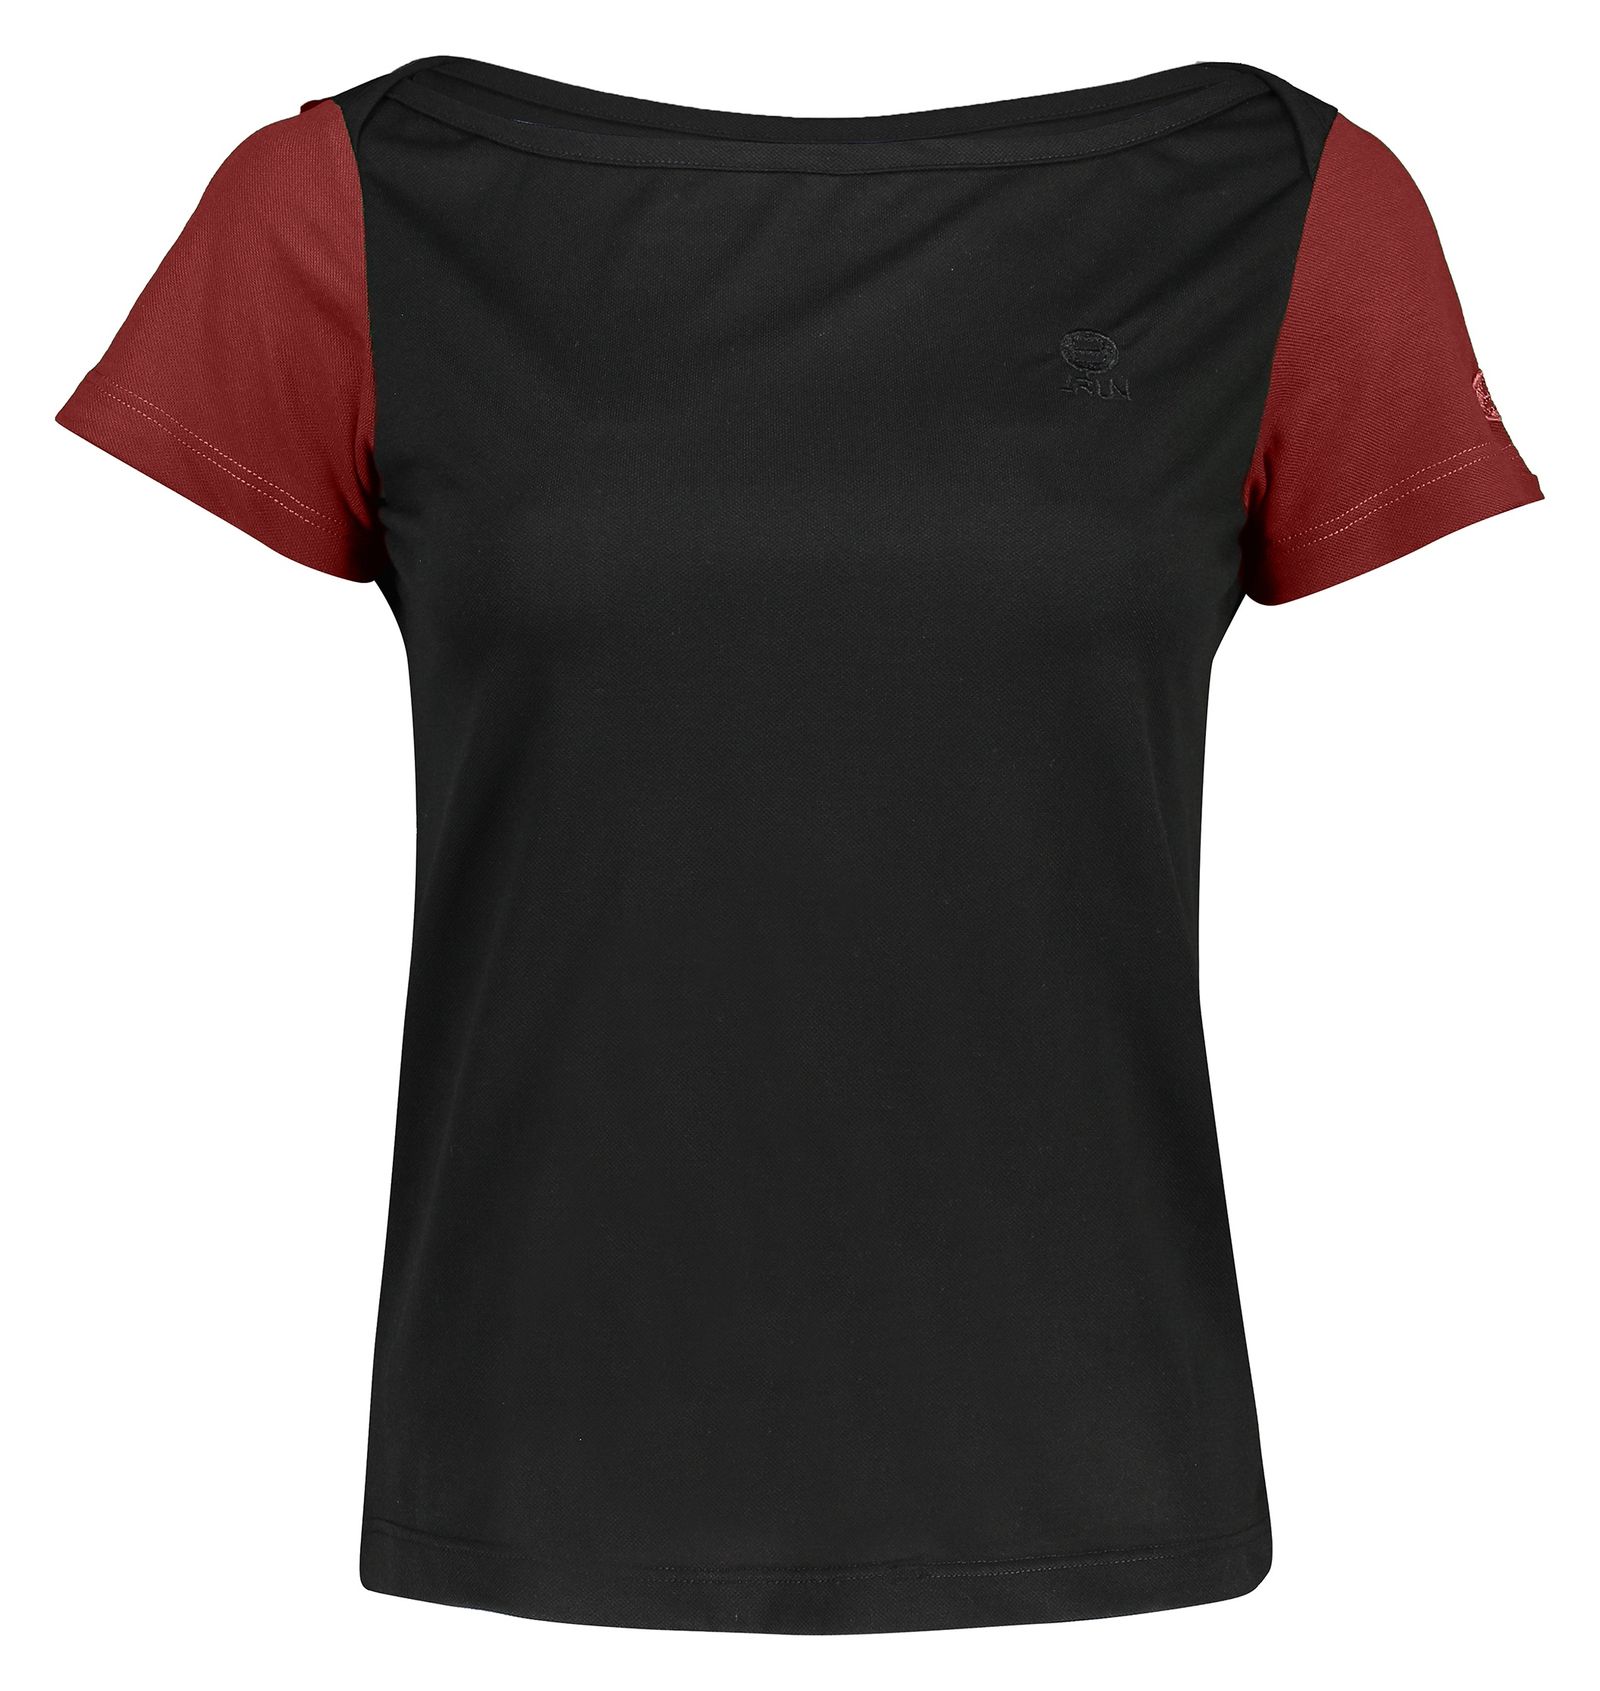 تی شرت ورزشی زنانه بی فور ران مدل 970324-9974 - مشکی زرشکی - 2